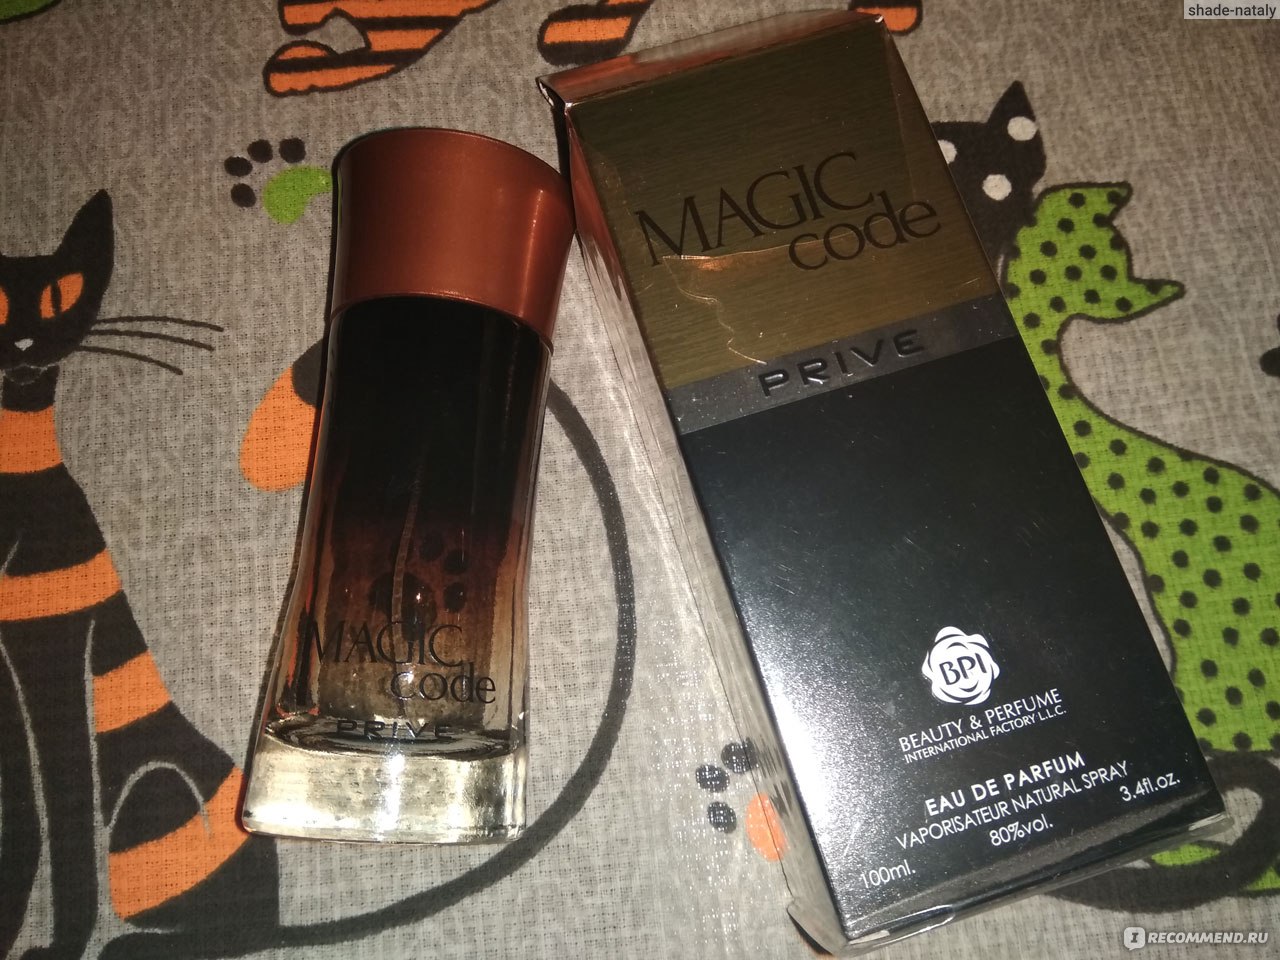 Magic Code Prive For Men MB Parfums